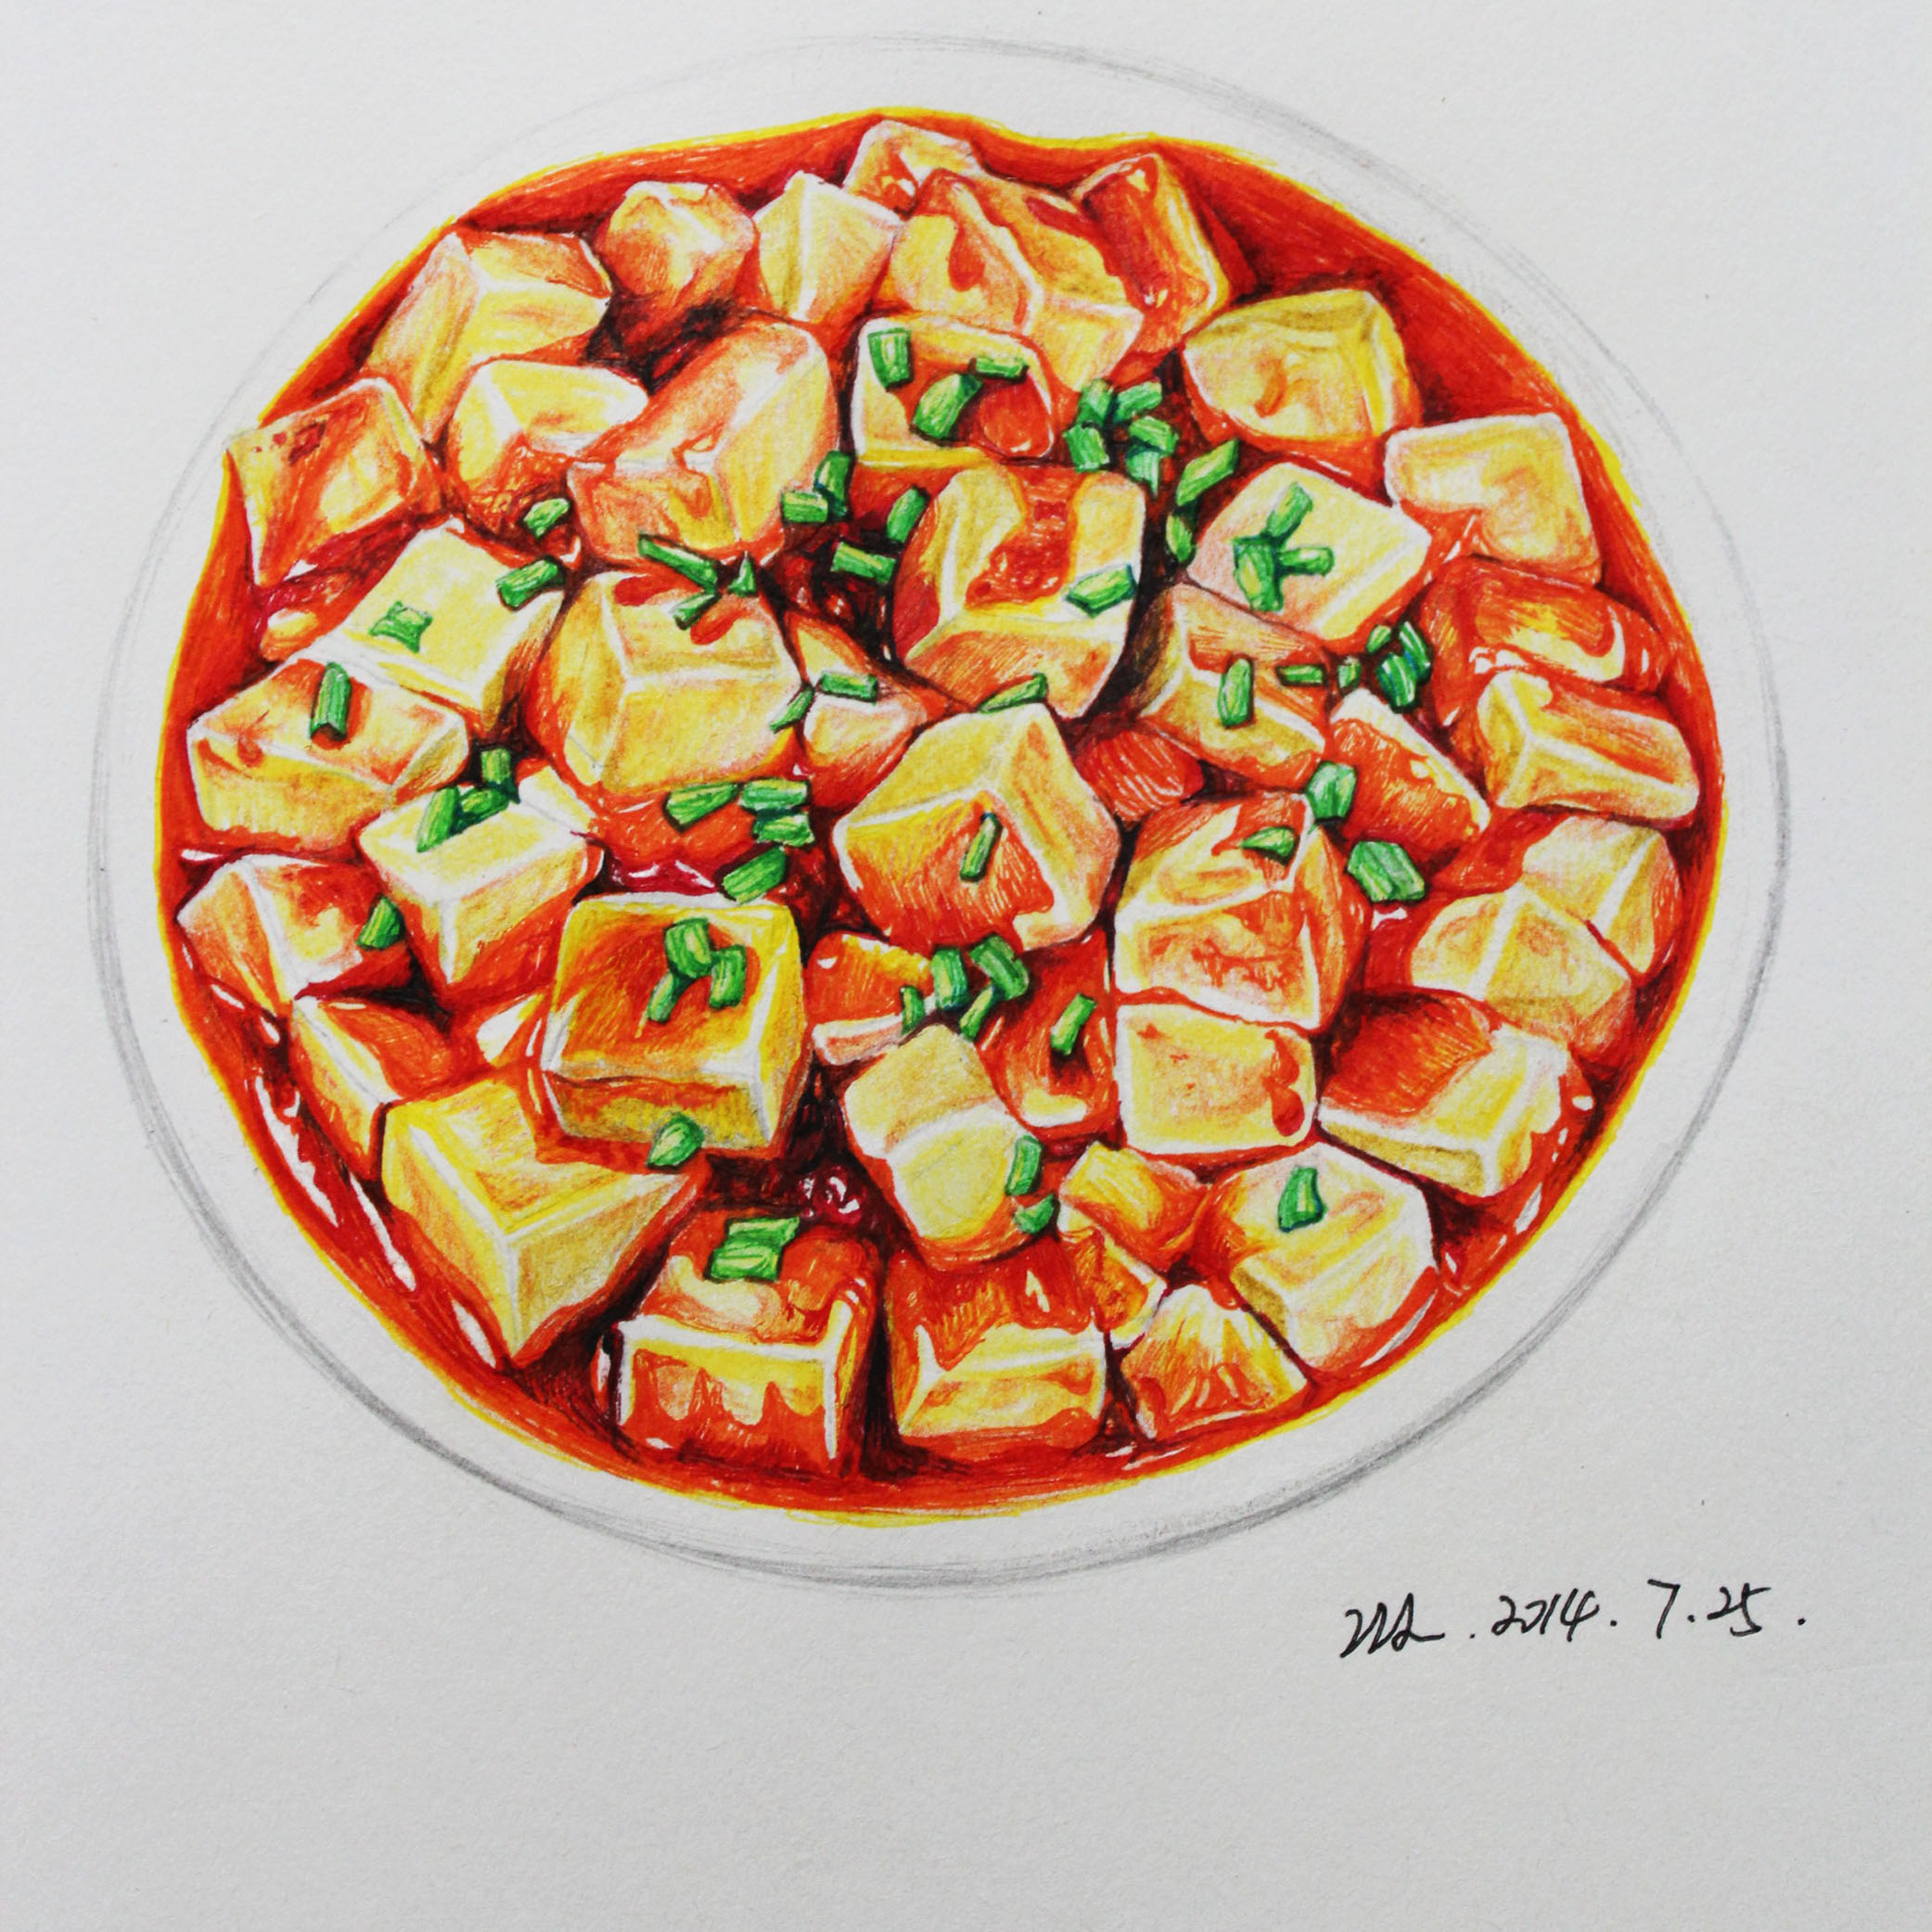 麻婆豆腐的简笔画图片